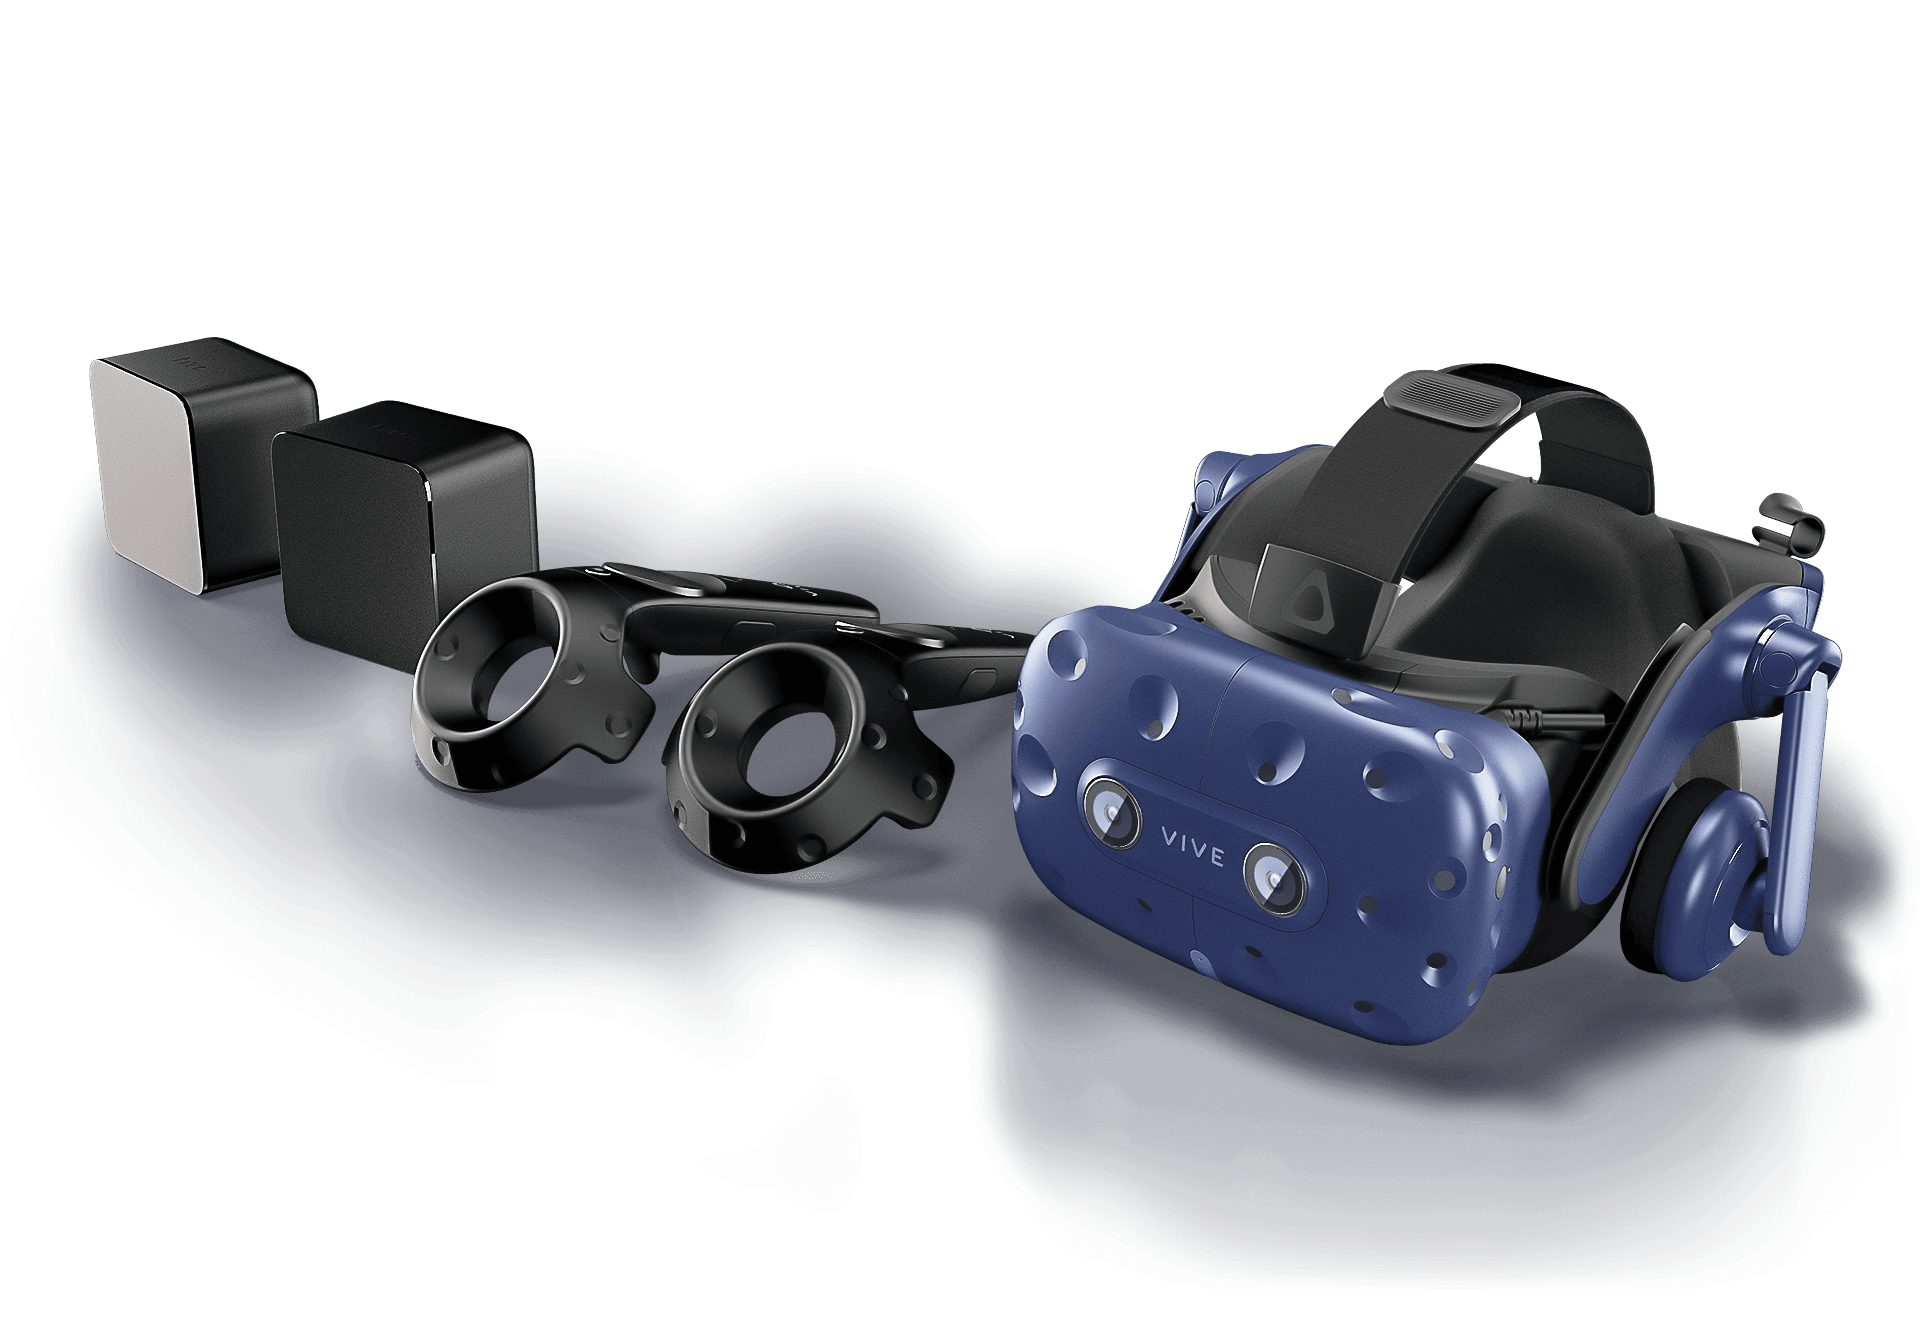 VIVE Pro Starter Kit | The professional-grade VR headset